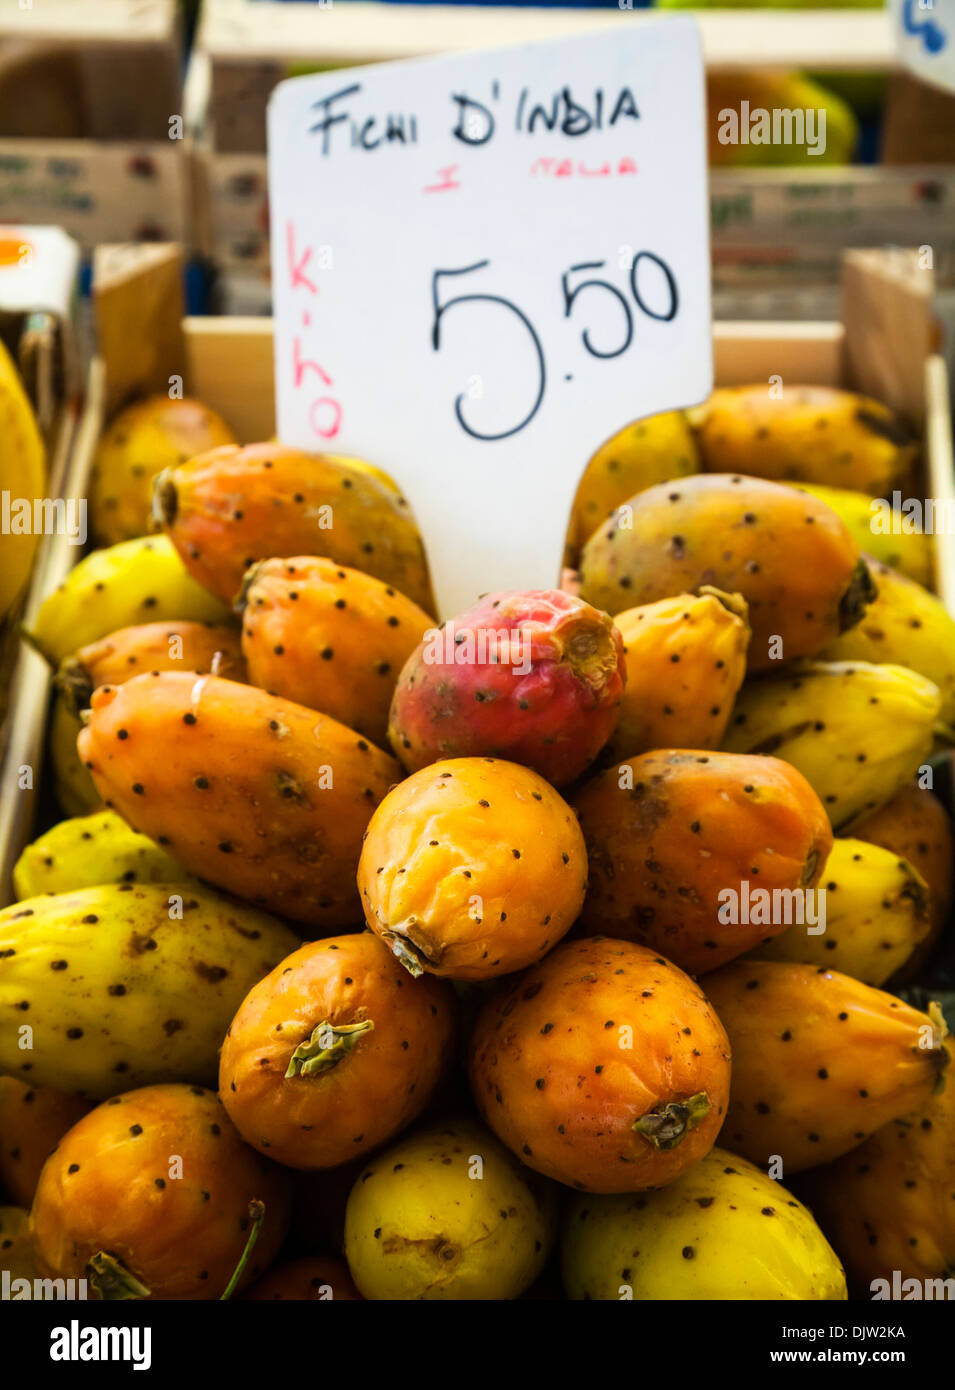 Opuntia prickly pears on sale in the Mercato di Rialto market, Venice, Italy. Stock Photo